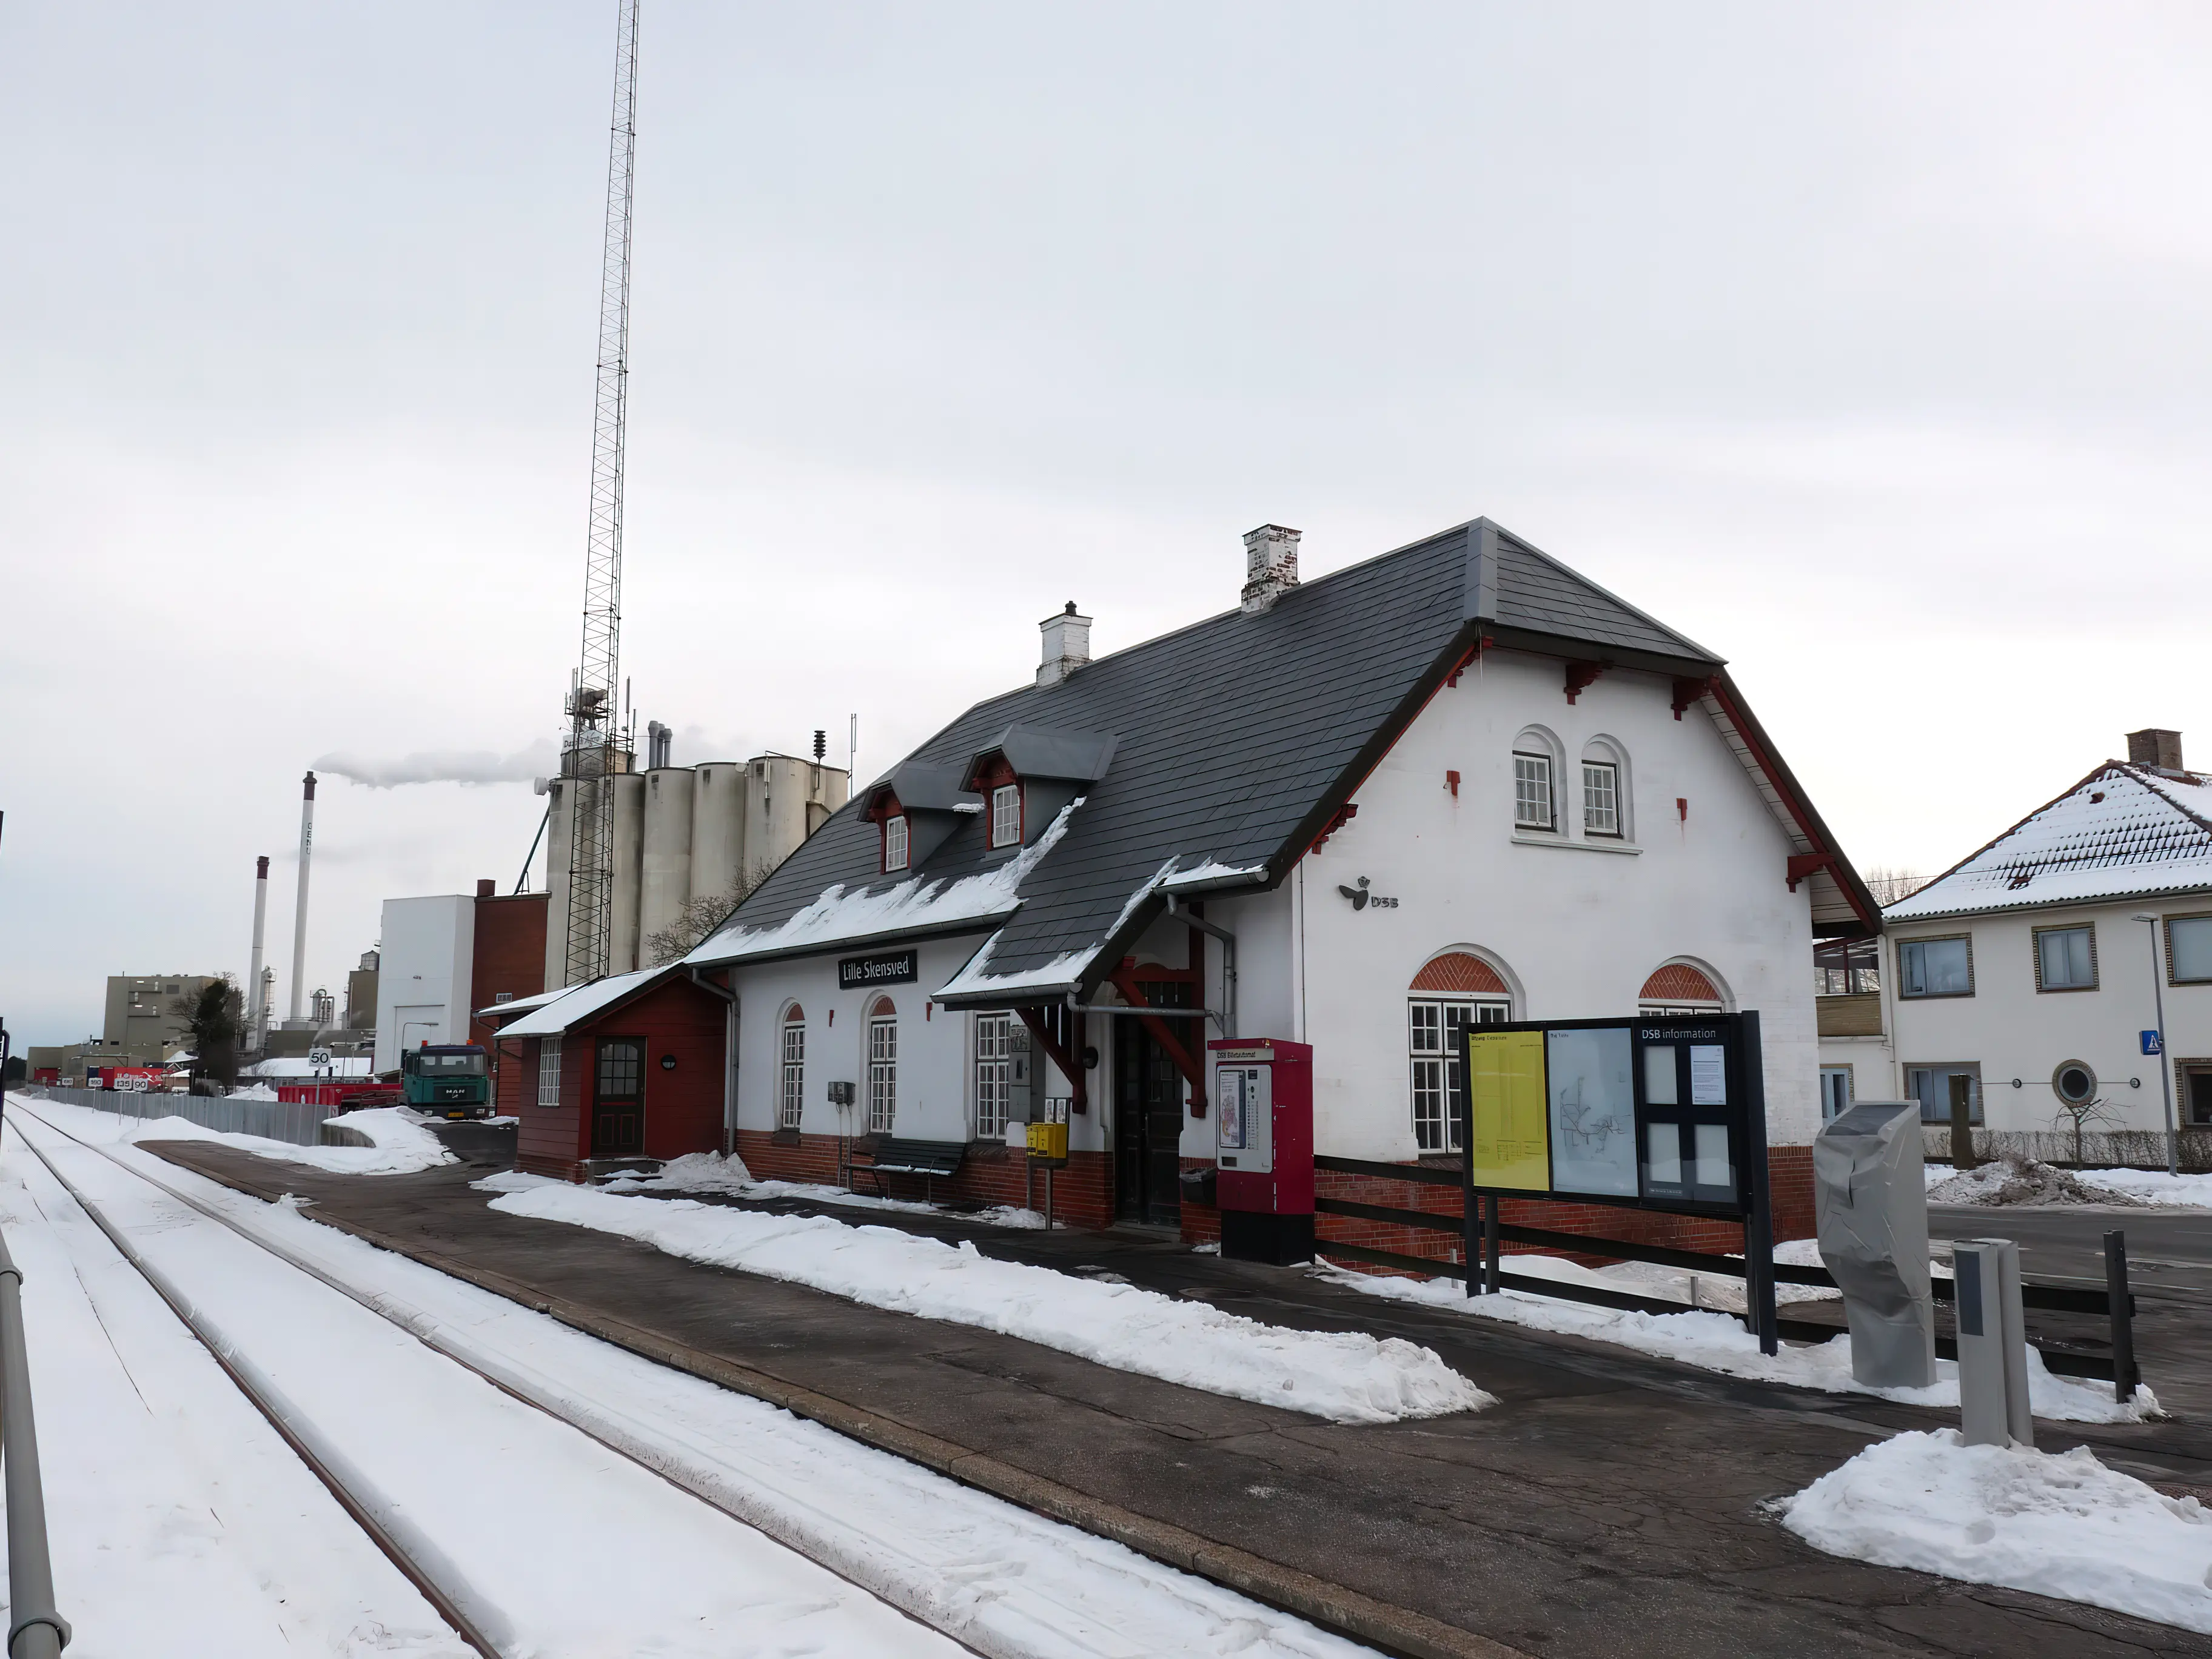 Billede af Lille Skensved Station.